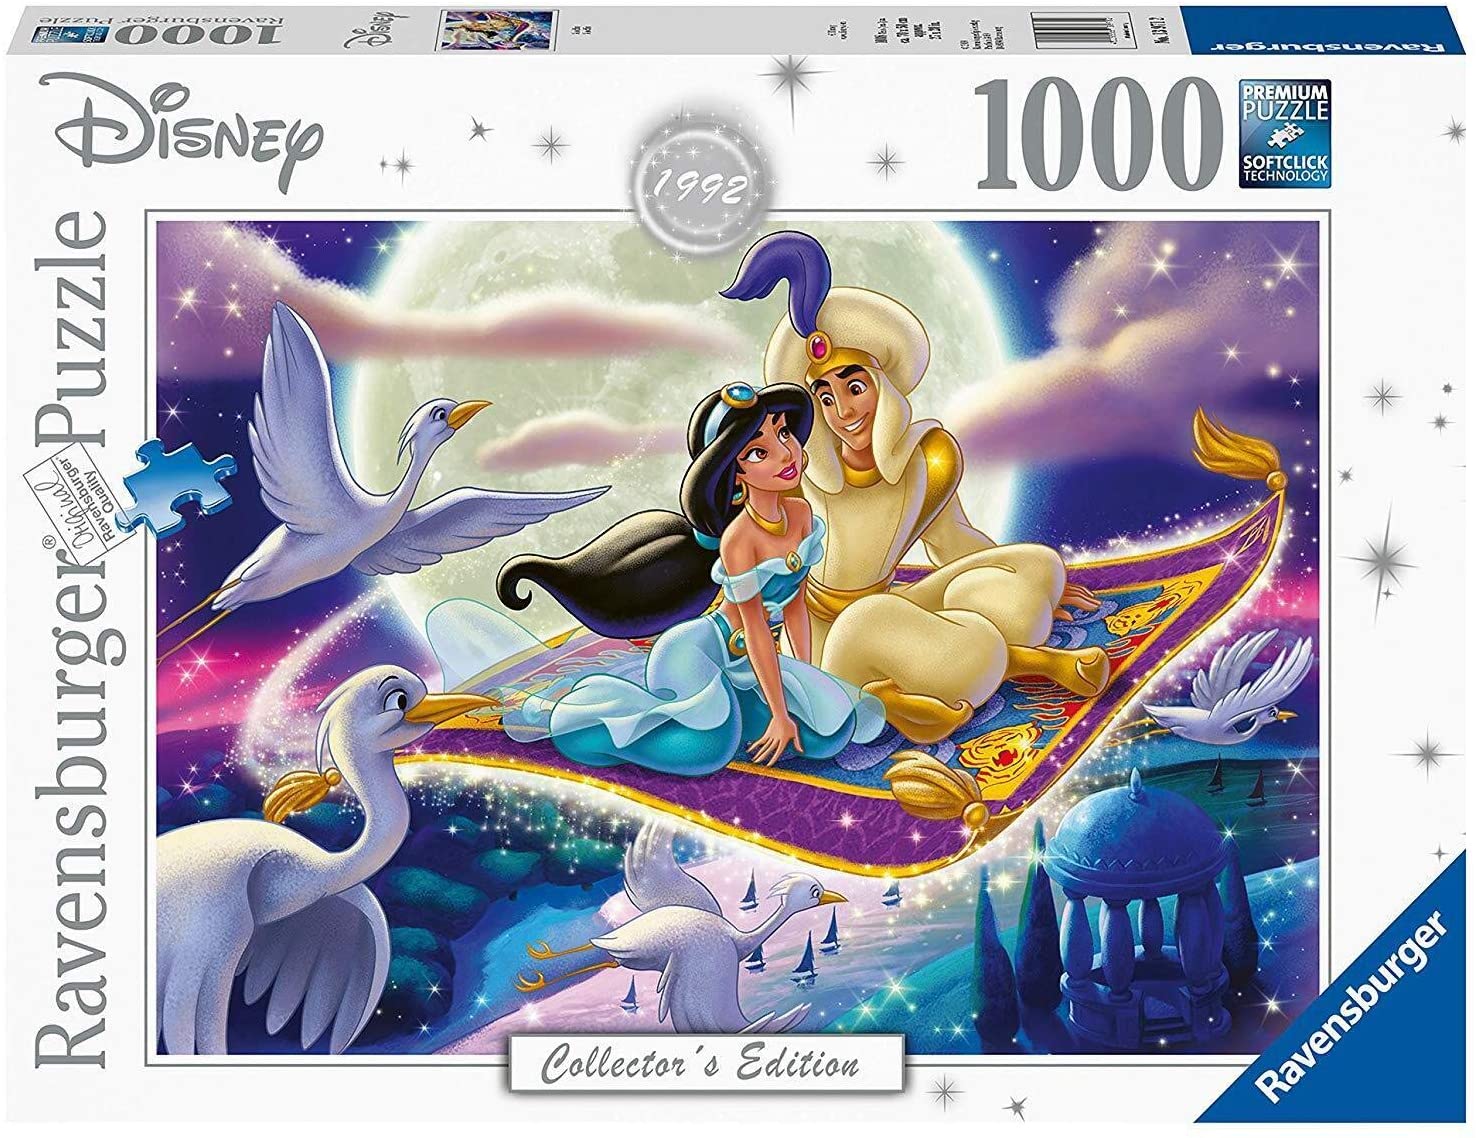 楽天市場 ディズニー ヴィランズ プリンス ジョン ロビンフッド ジグソーパズル パズル 1000ピース Disney Villains Prince John Sirius